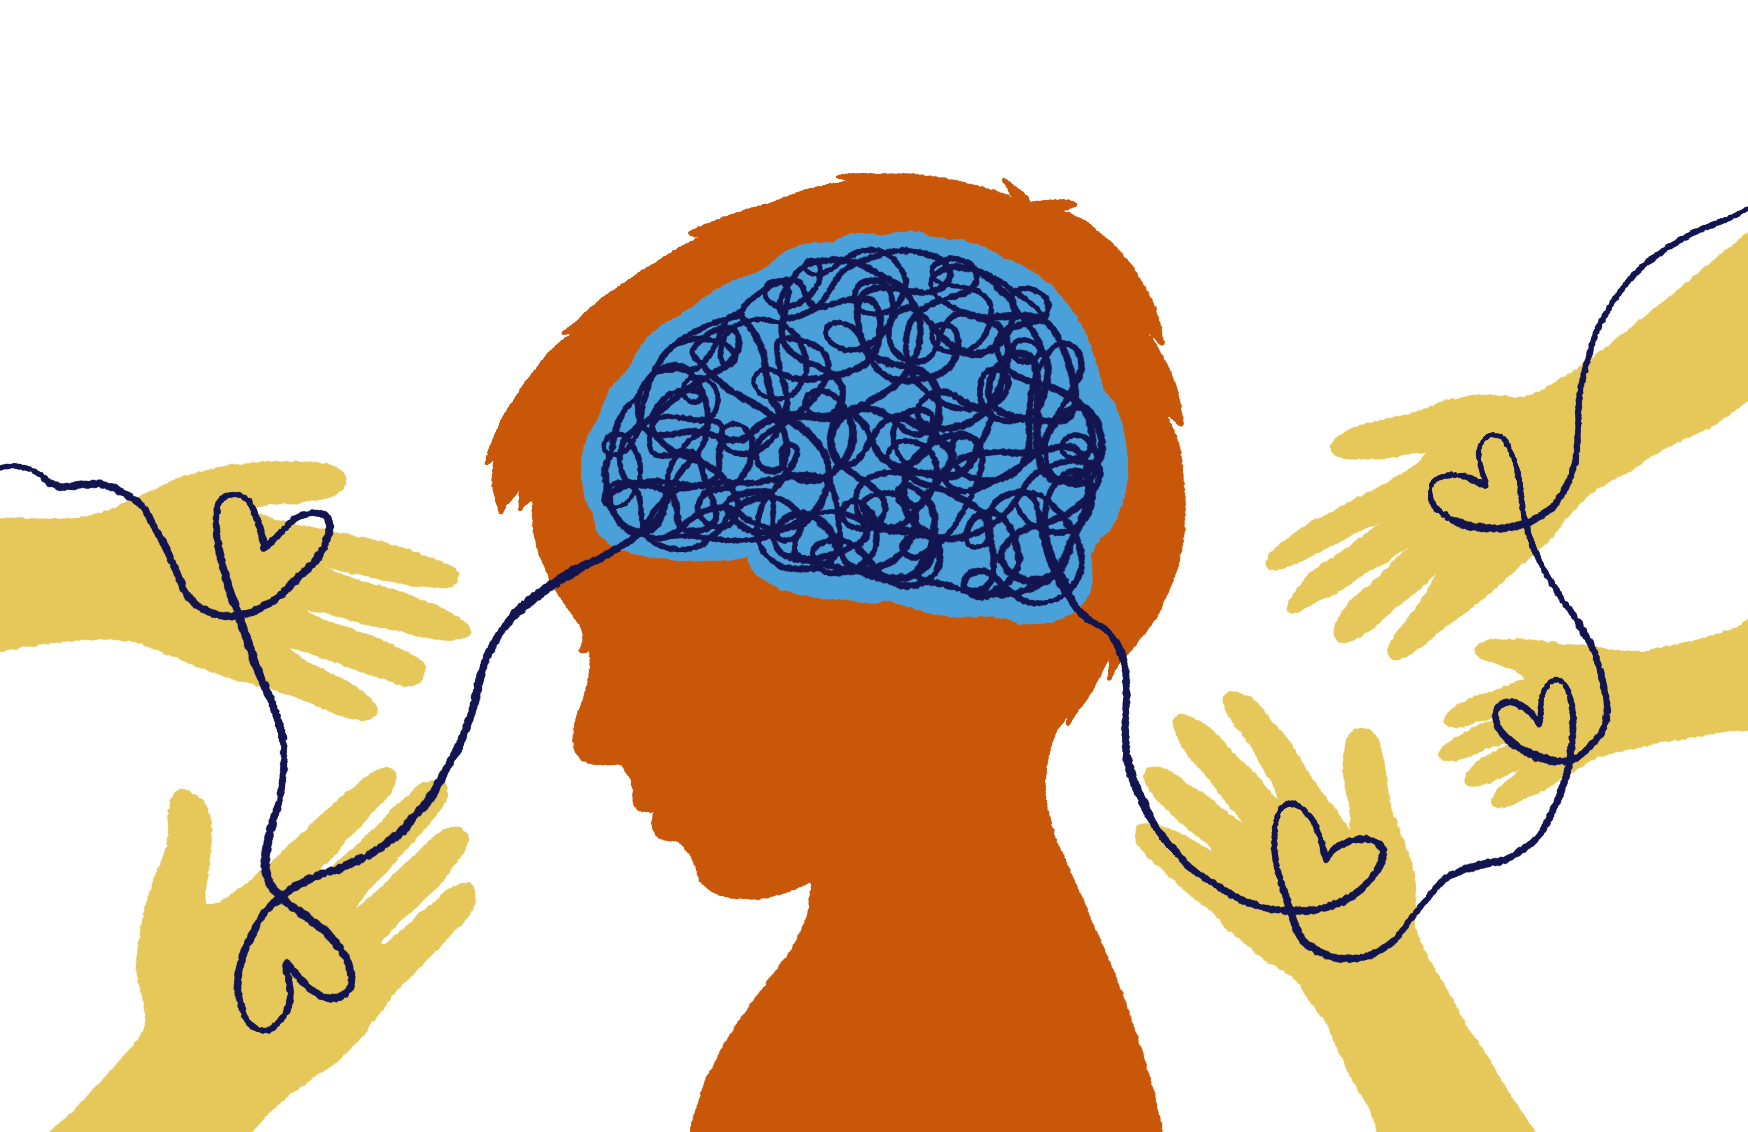 Piirroskuva lapsen pää sivusta kuvattuna ja päähän piirretty aivot. Ympärillä käsiä, kämmenissä sydämet, jotka samassa ketjussa yhteydessä lapseen.